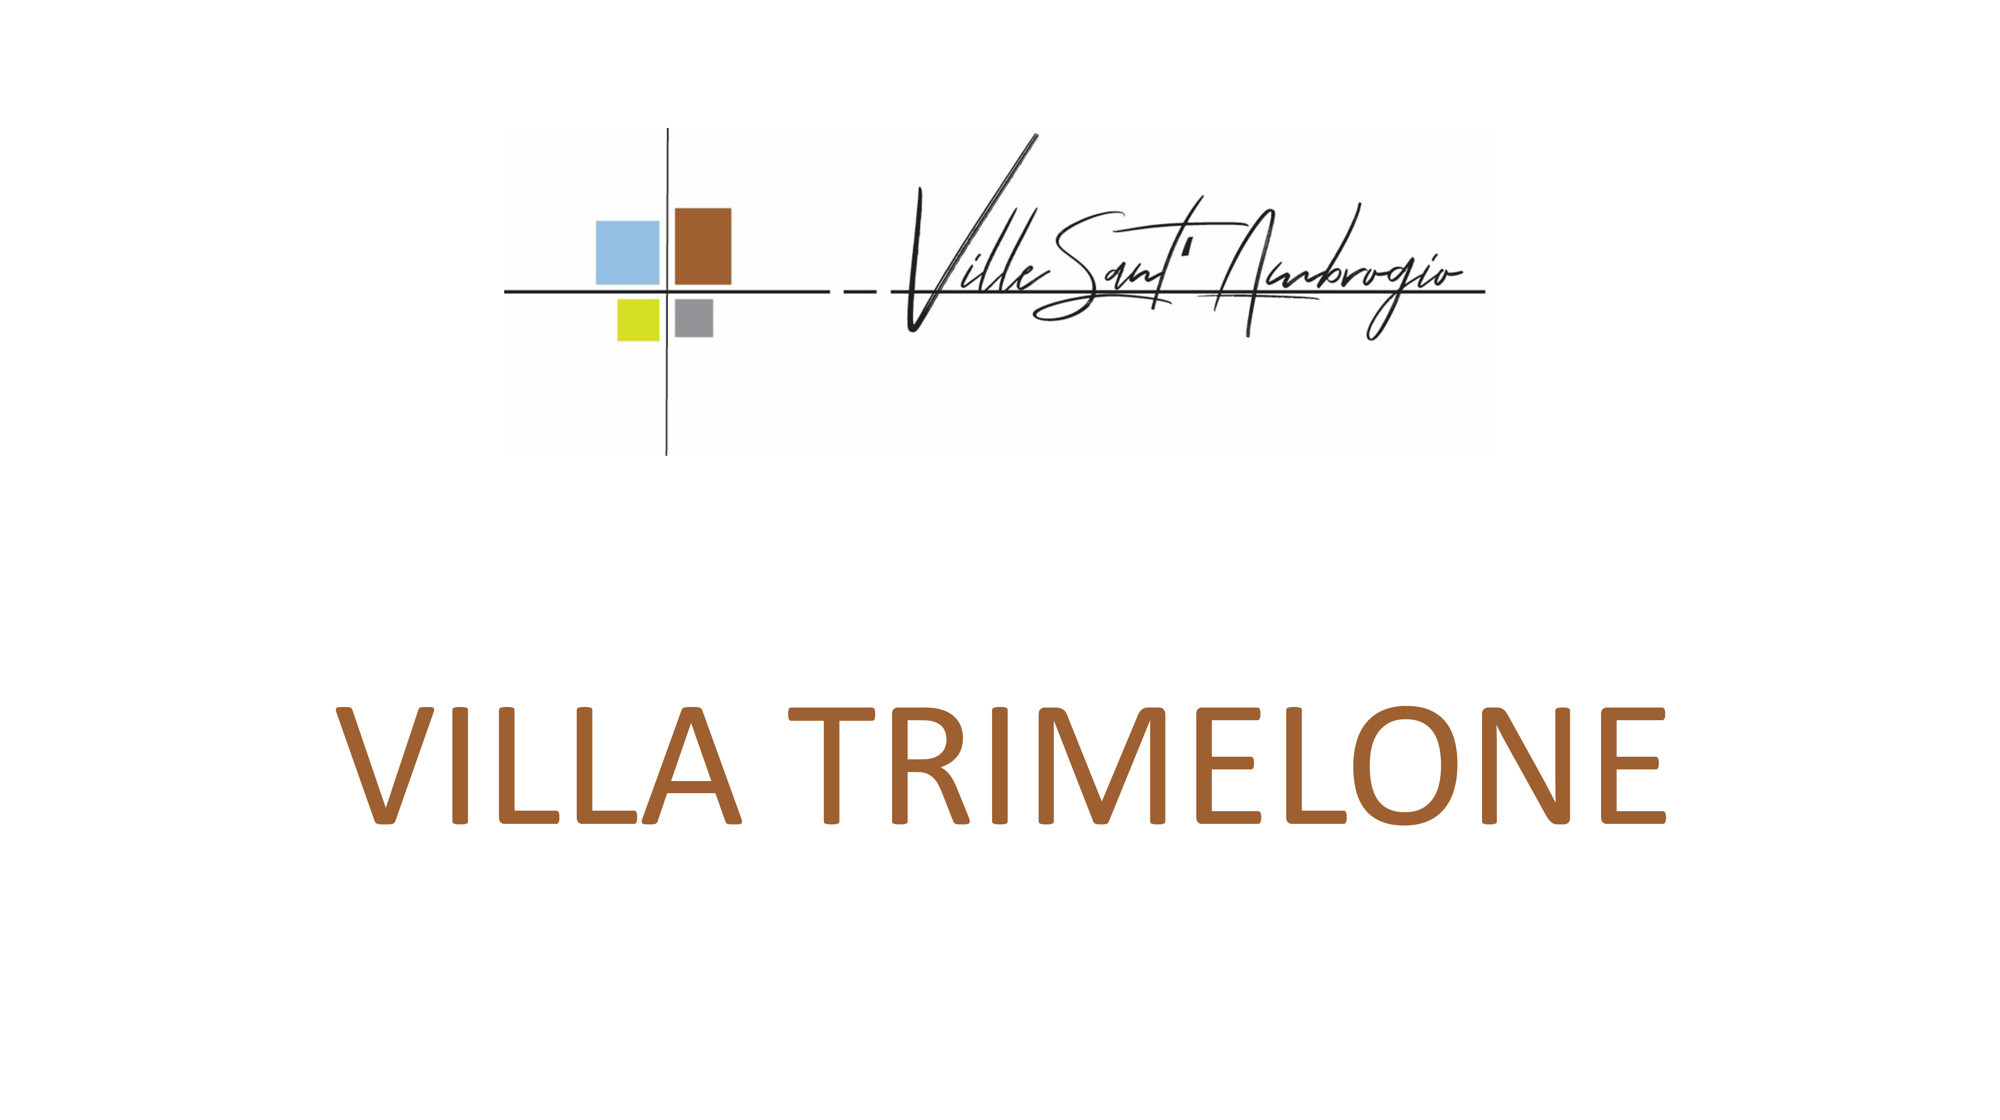 Villa Trimelone